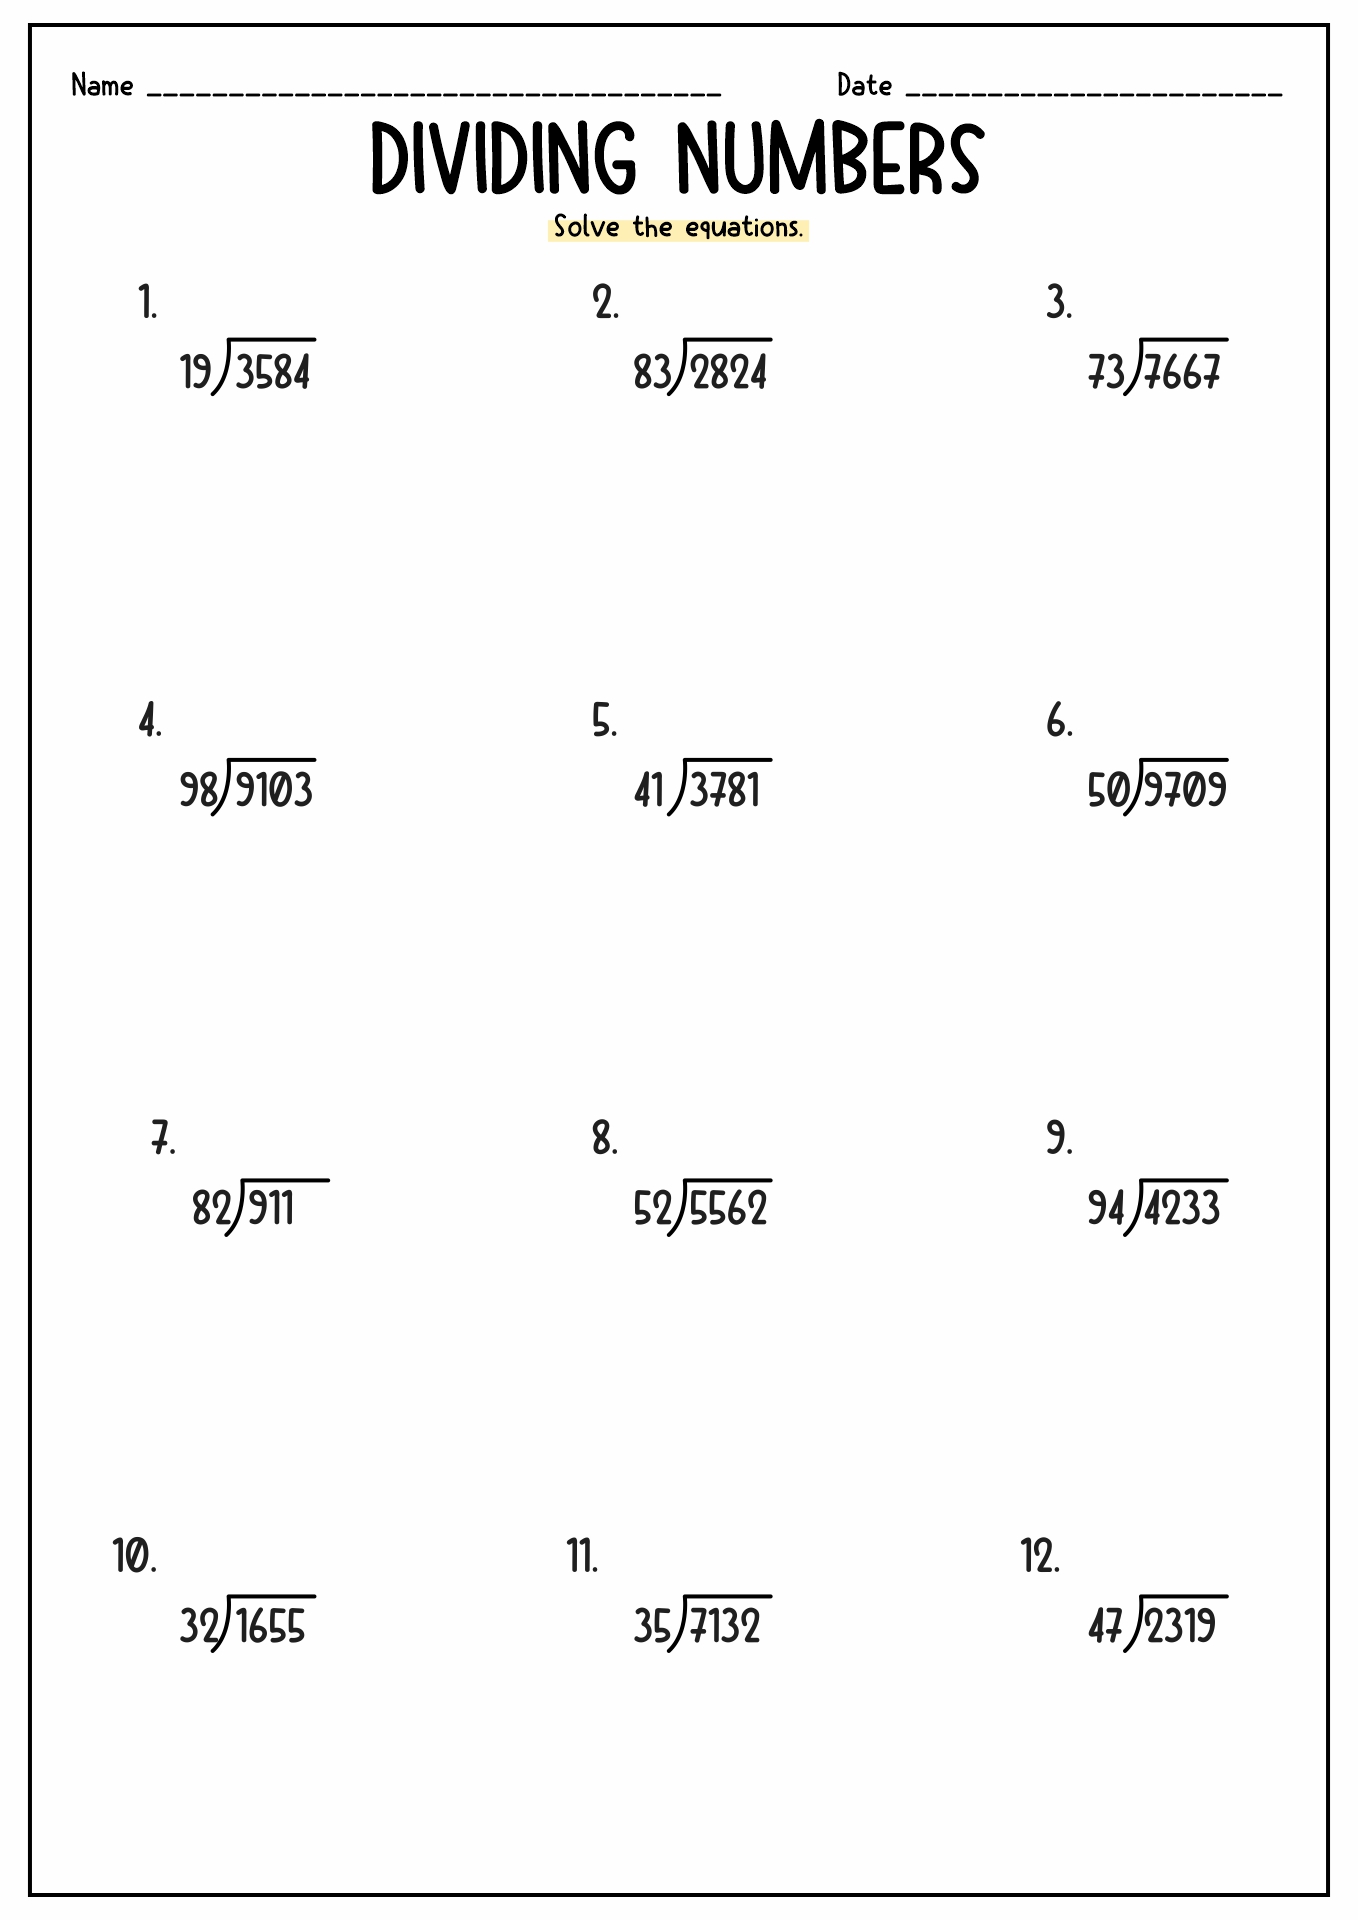 5th Grade Long Division Worksheets Image